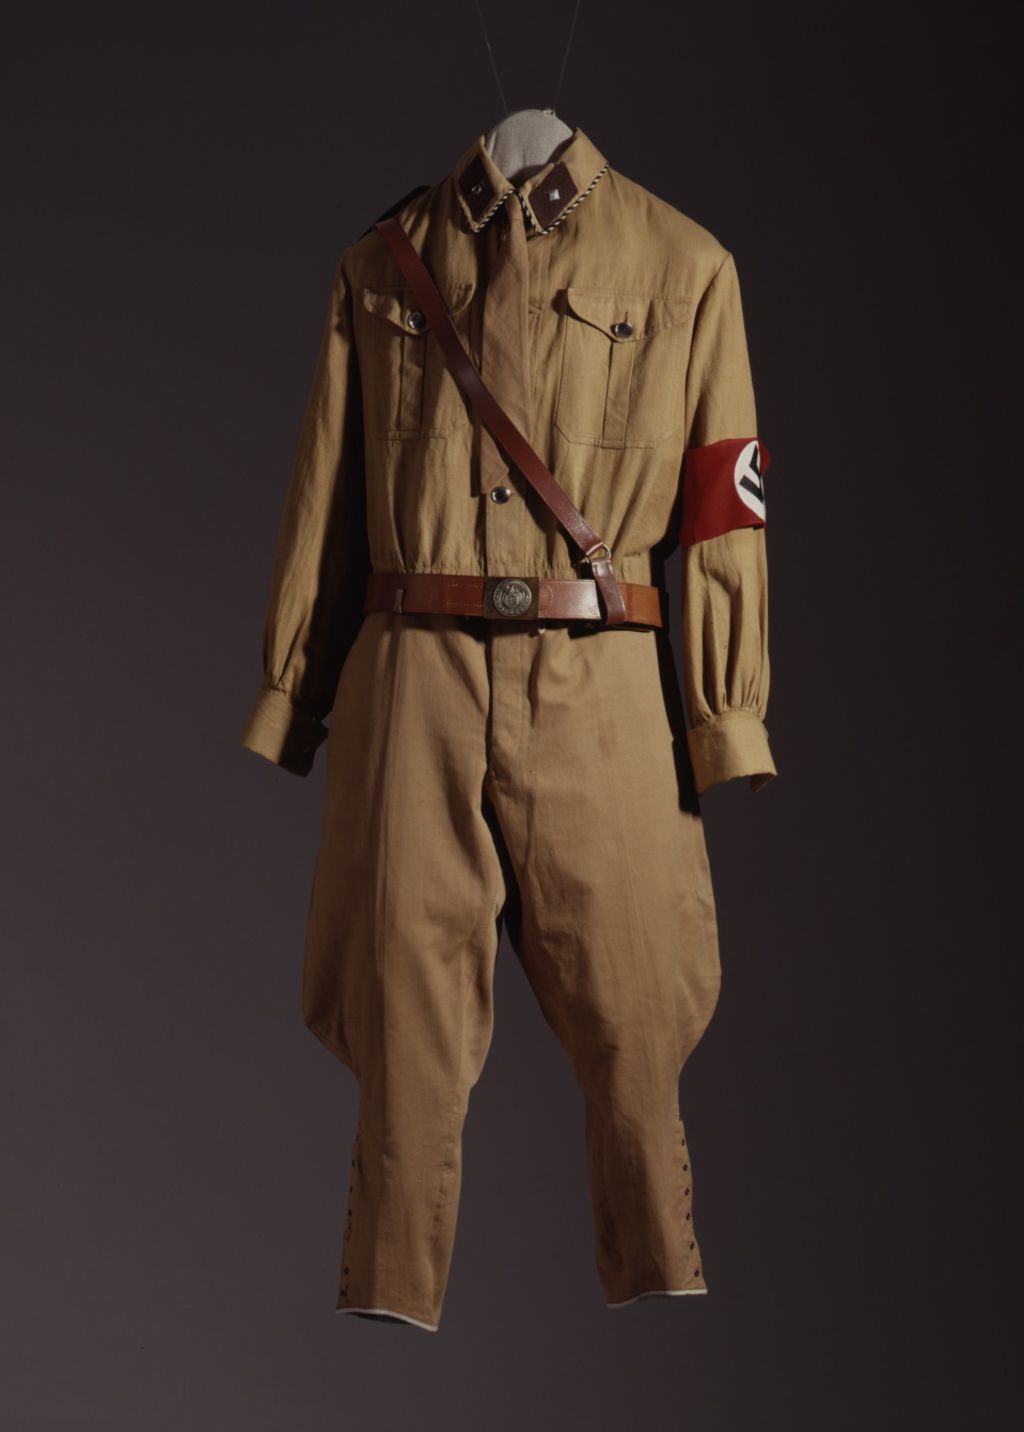 LeMO Bestand - Objekt - Uniform der SA, um 1930